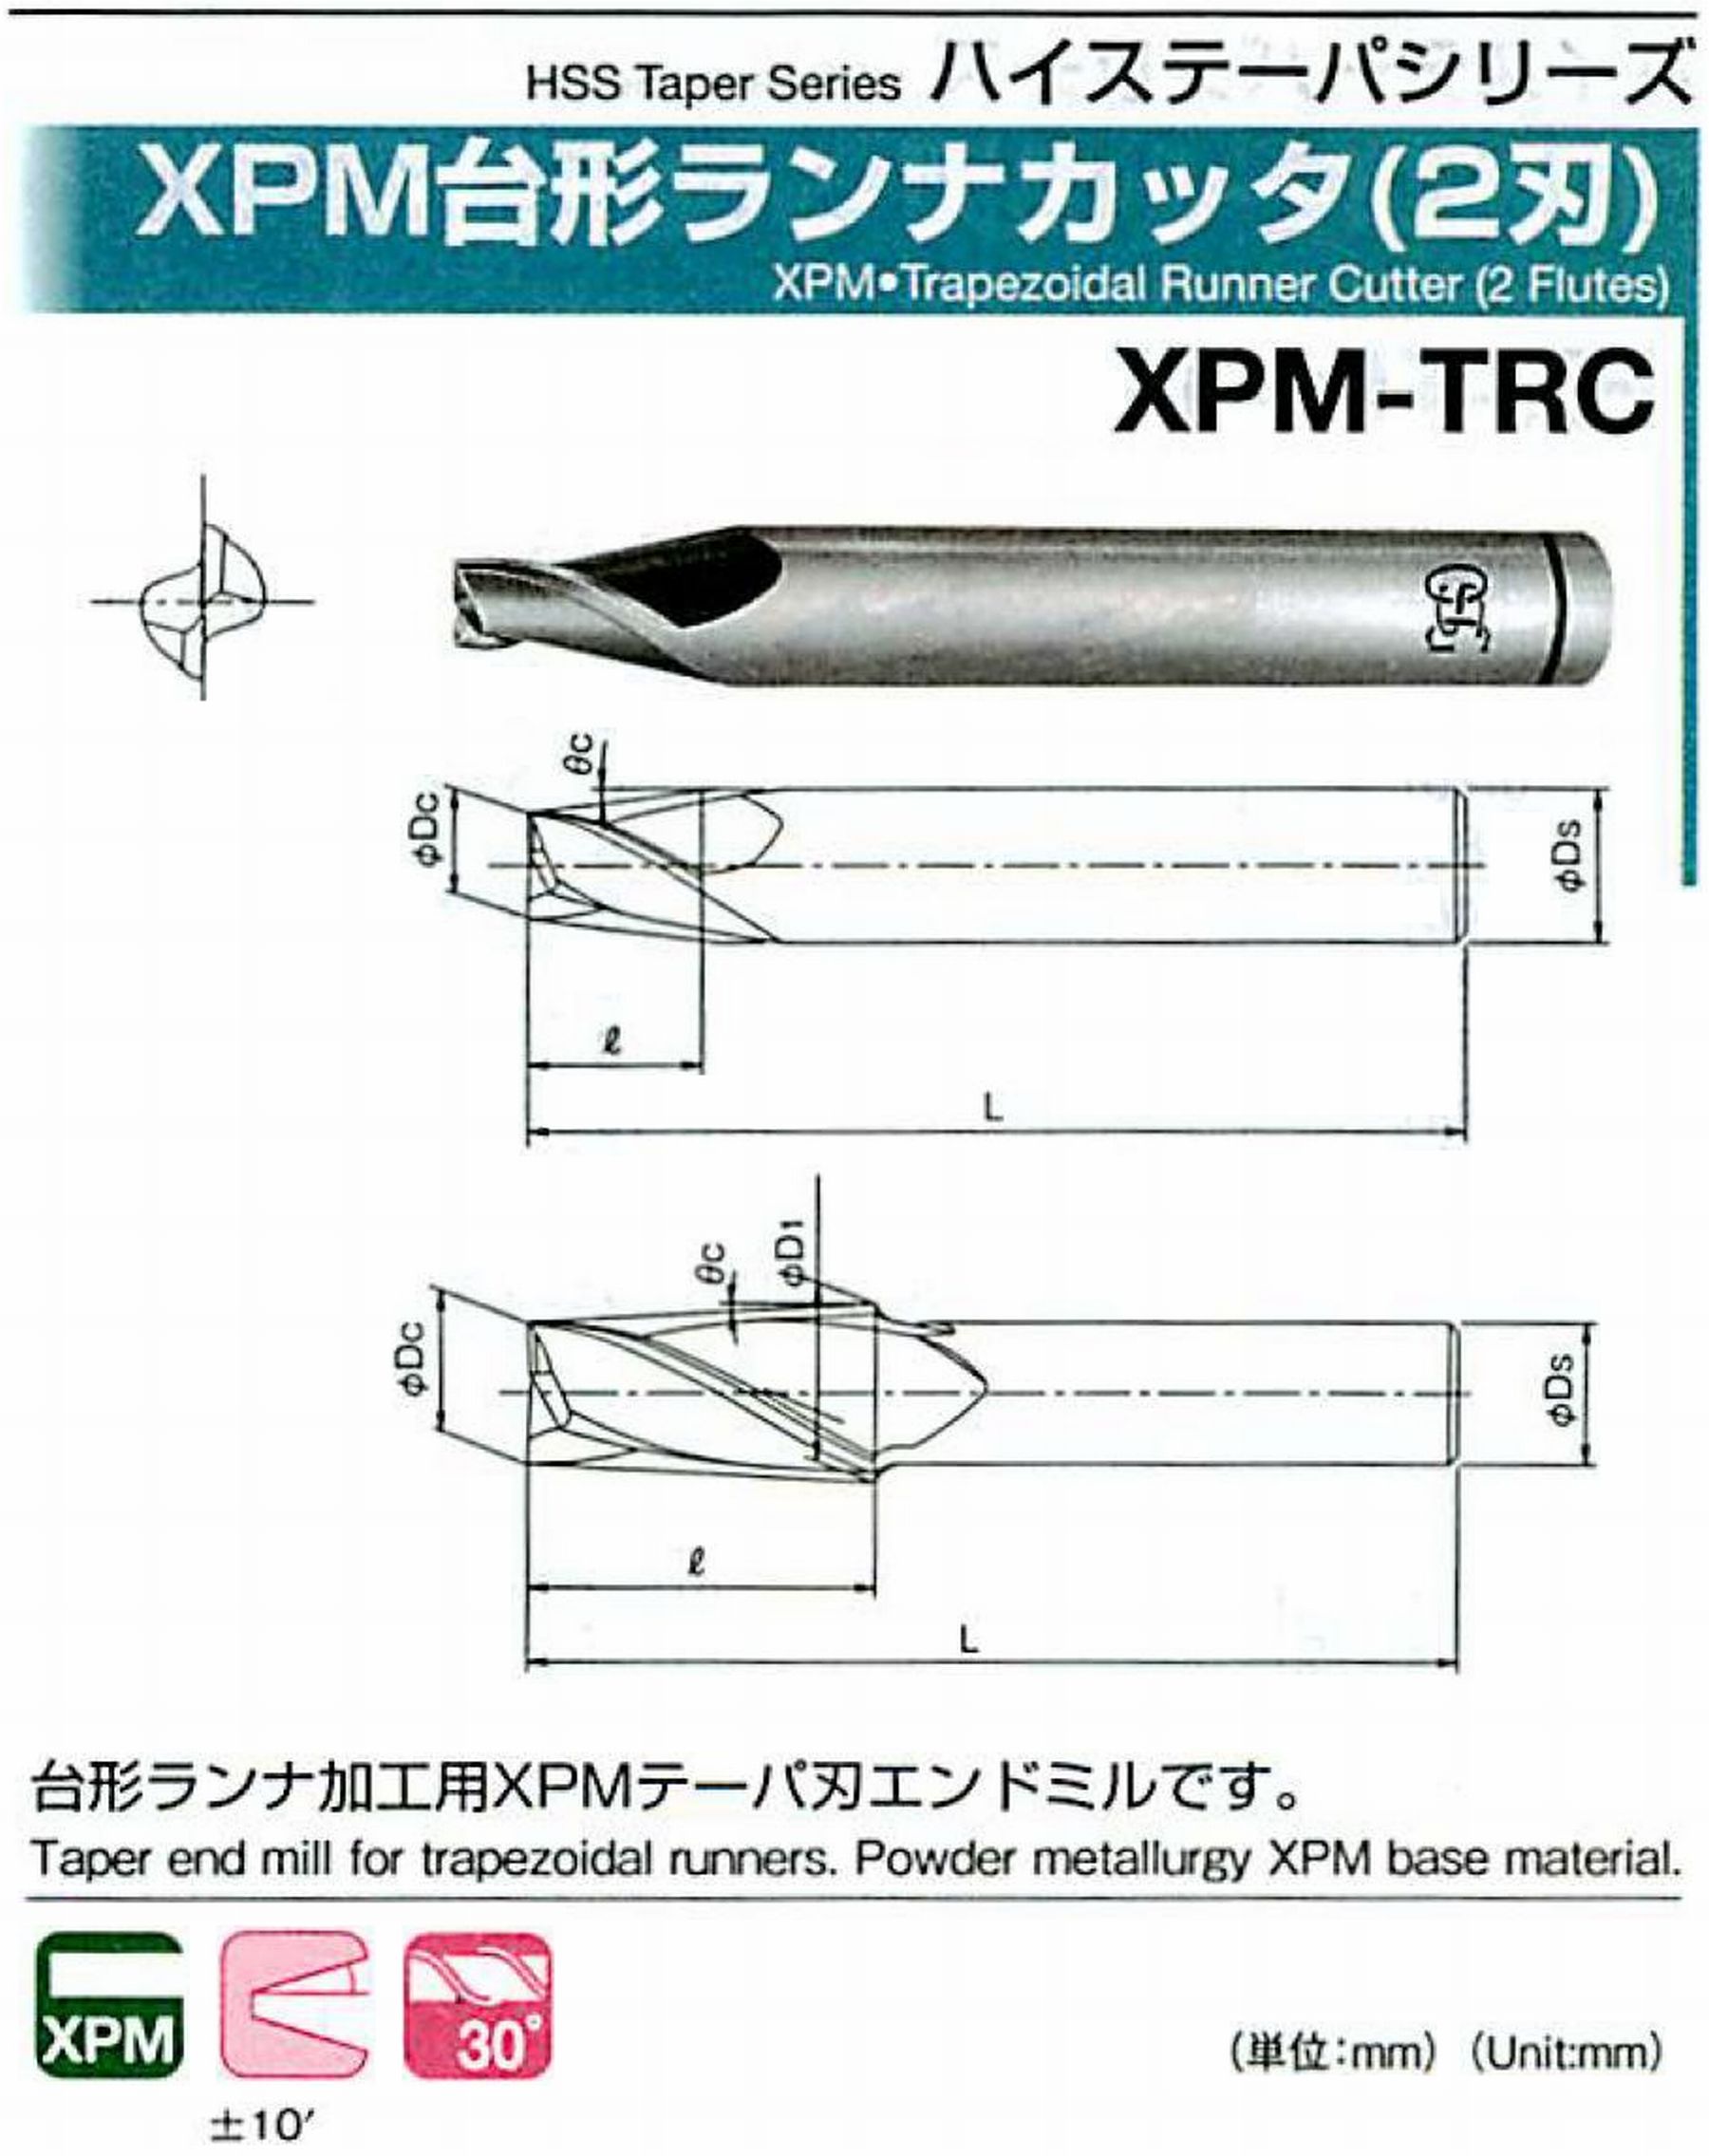 オーエスジー/OSG XPM台形ランナカッタ(2刃) XPM-TRC 外径×刃部テーパ半角2×7° 全長45 刃長4 シャンク径4mm